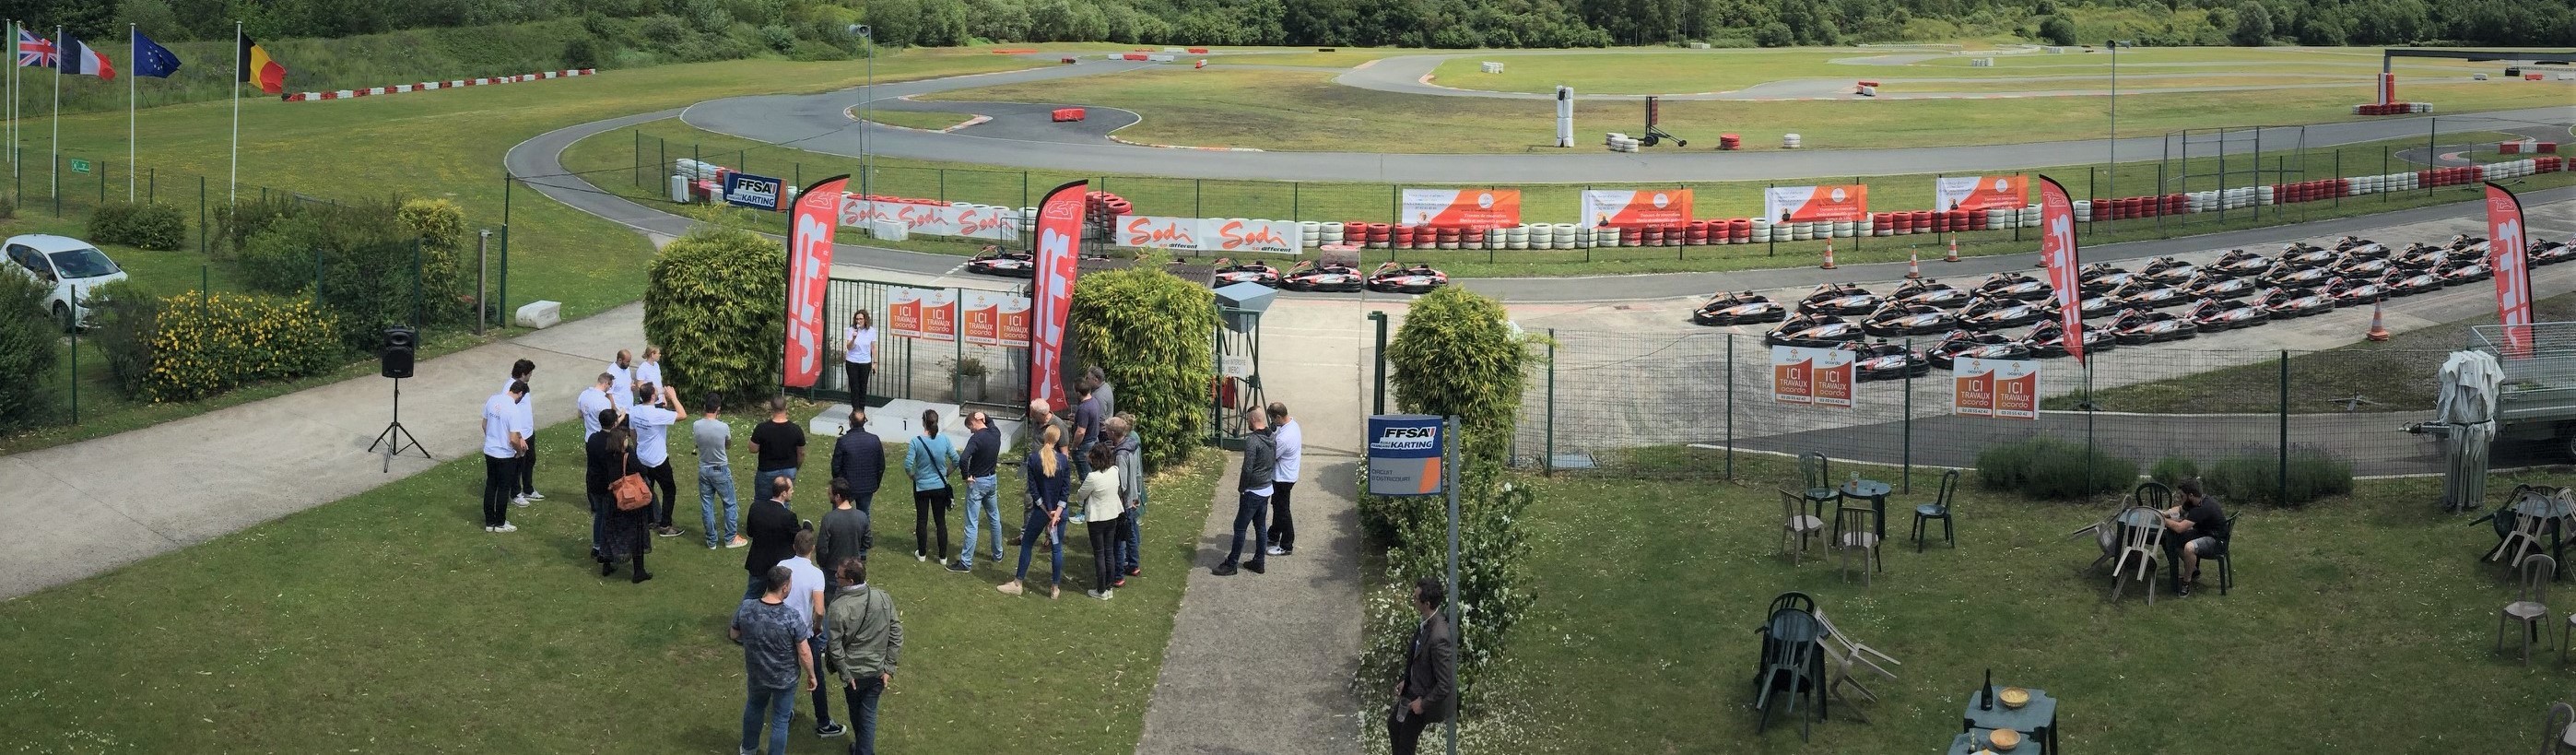 Evenement d'entreprise racing kart JPR Ostricourt